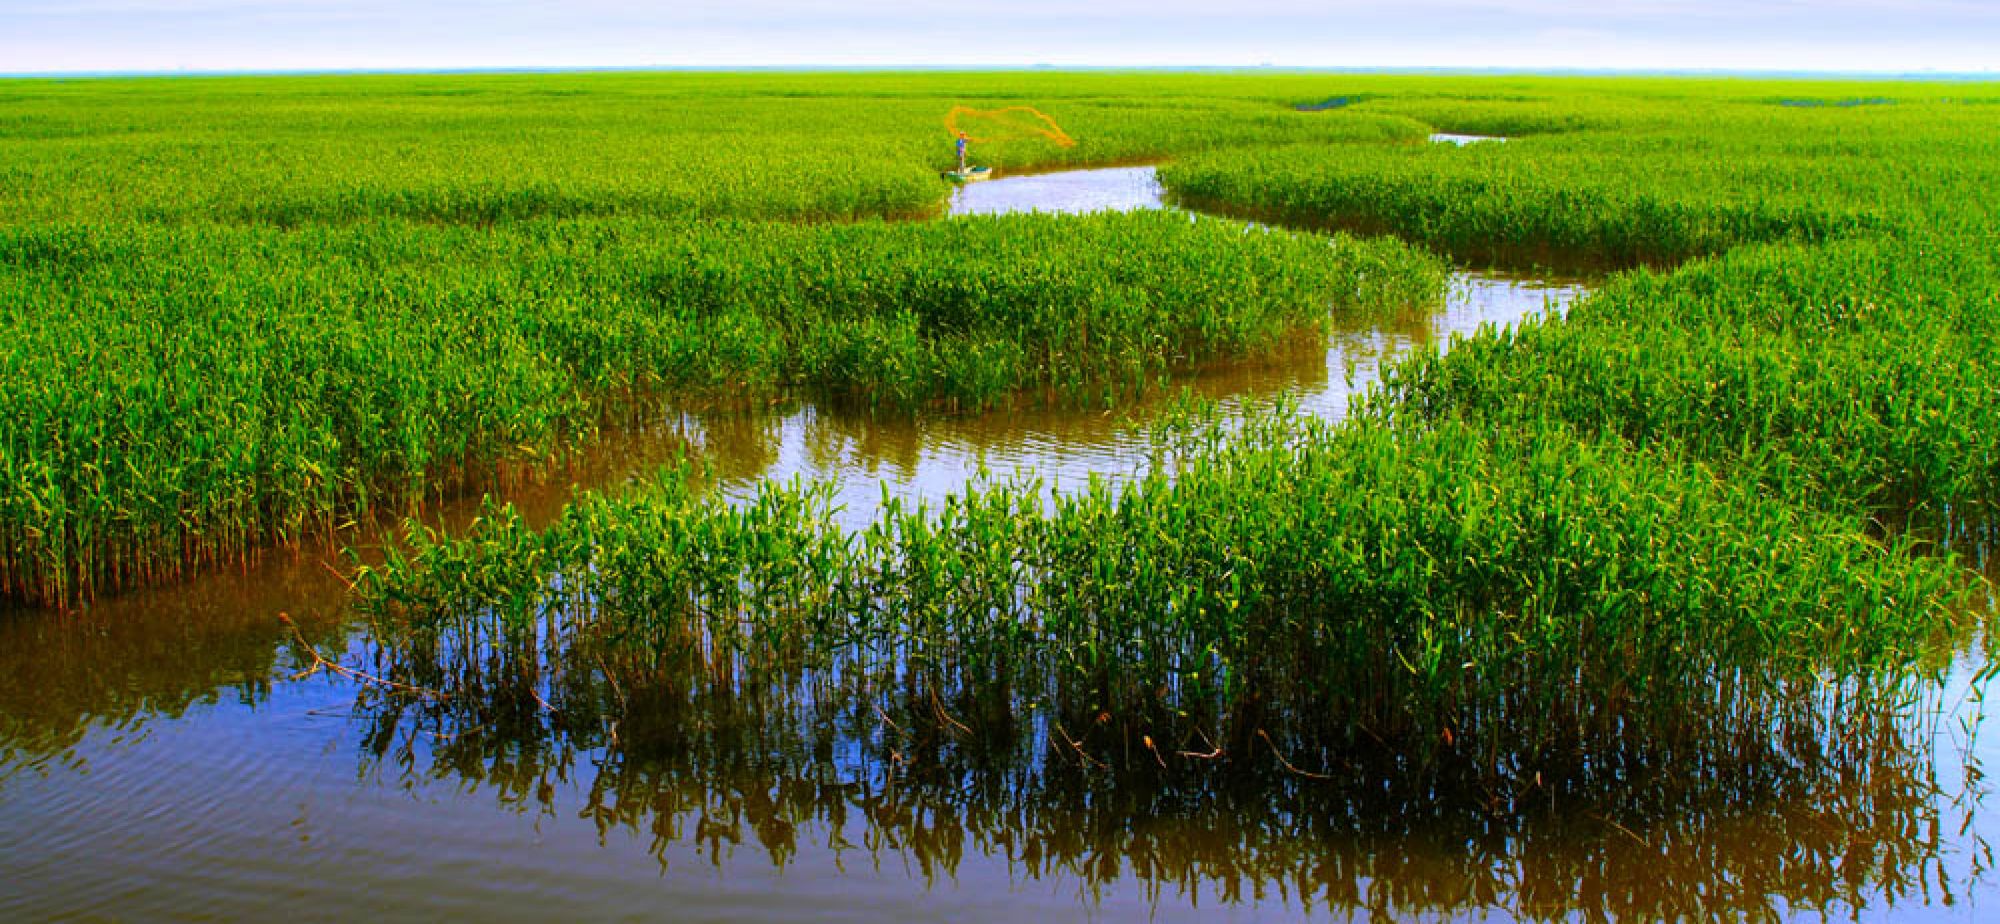 加入《湿地公约》30年 中国湿地保护工作取得哪些成效？